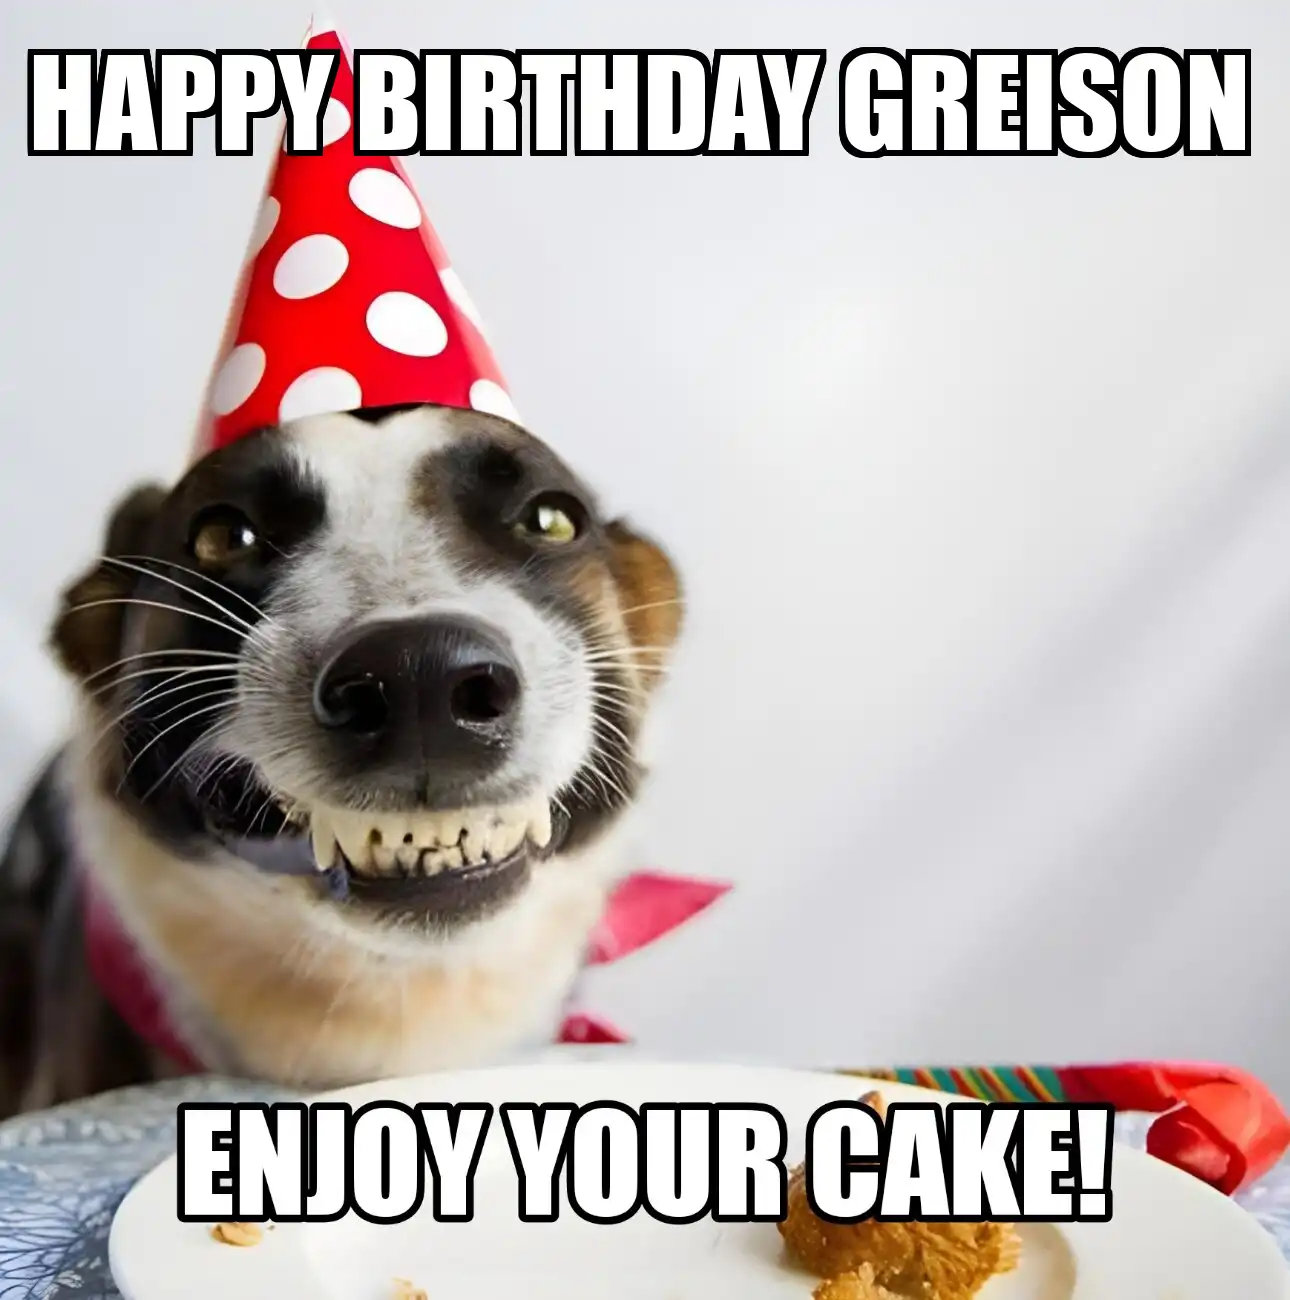 Happy Birthday Greison Enjoy Your Cake Dog Meme